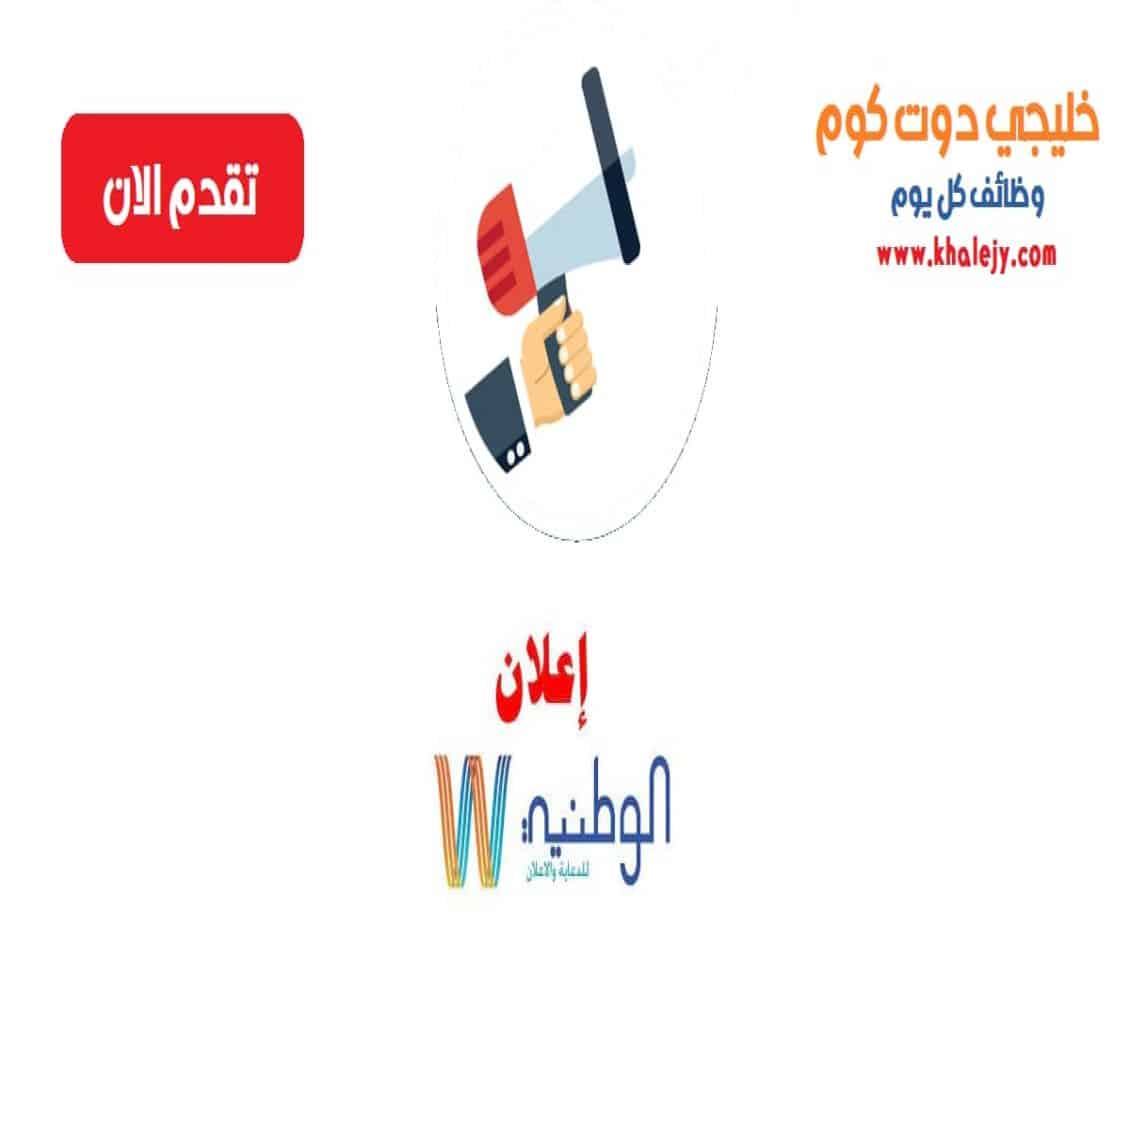 وظائف الشركة الوطنية للنشر والاعلان في عمان